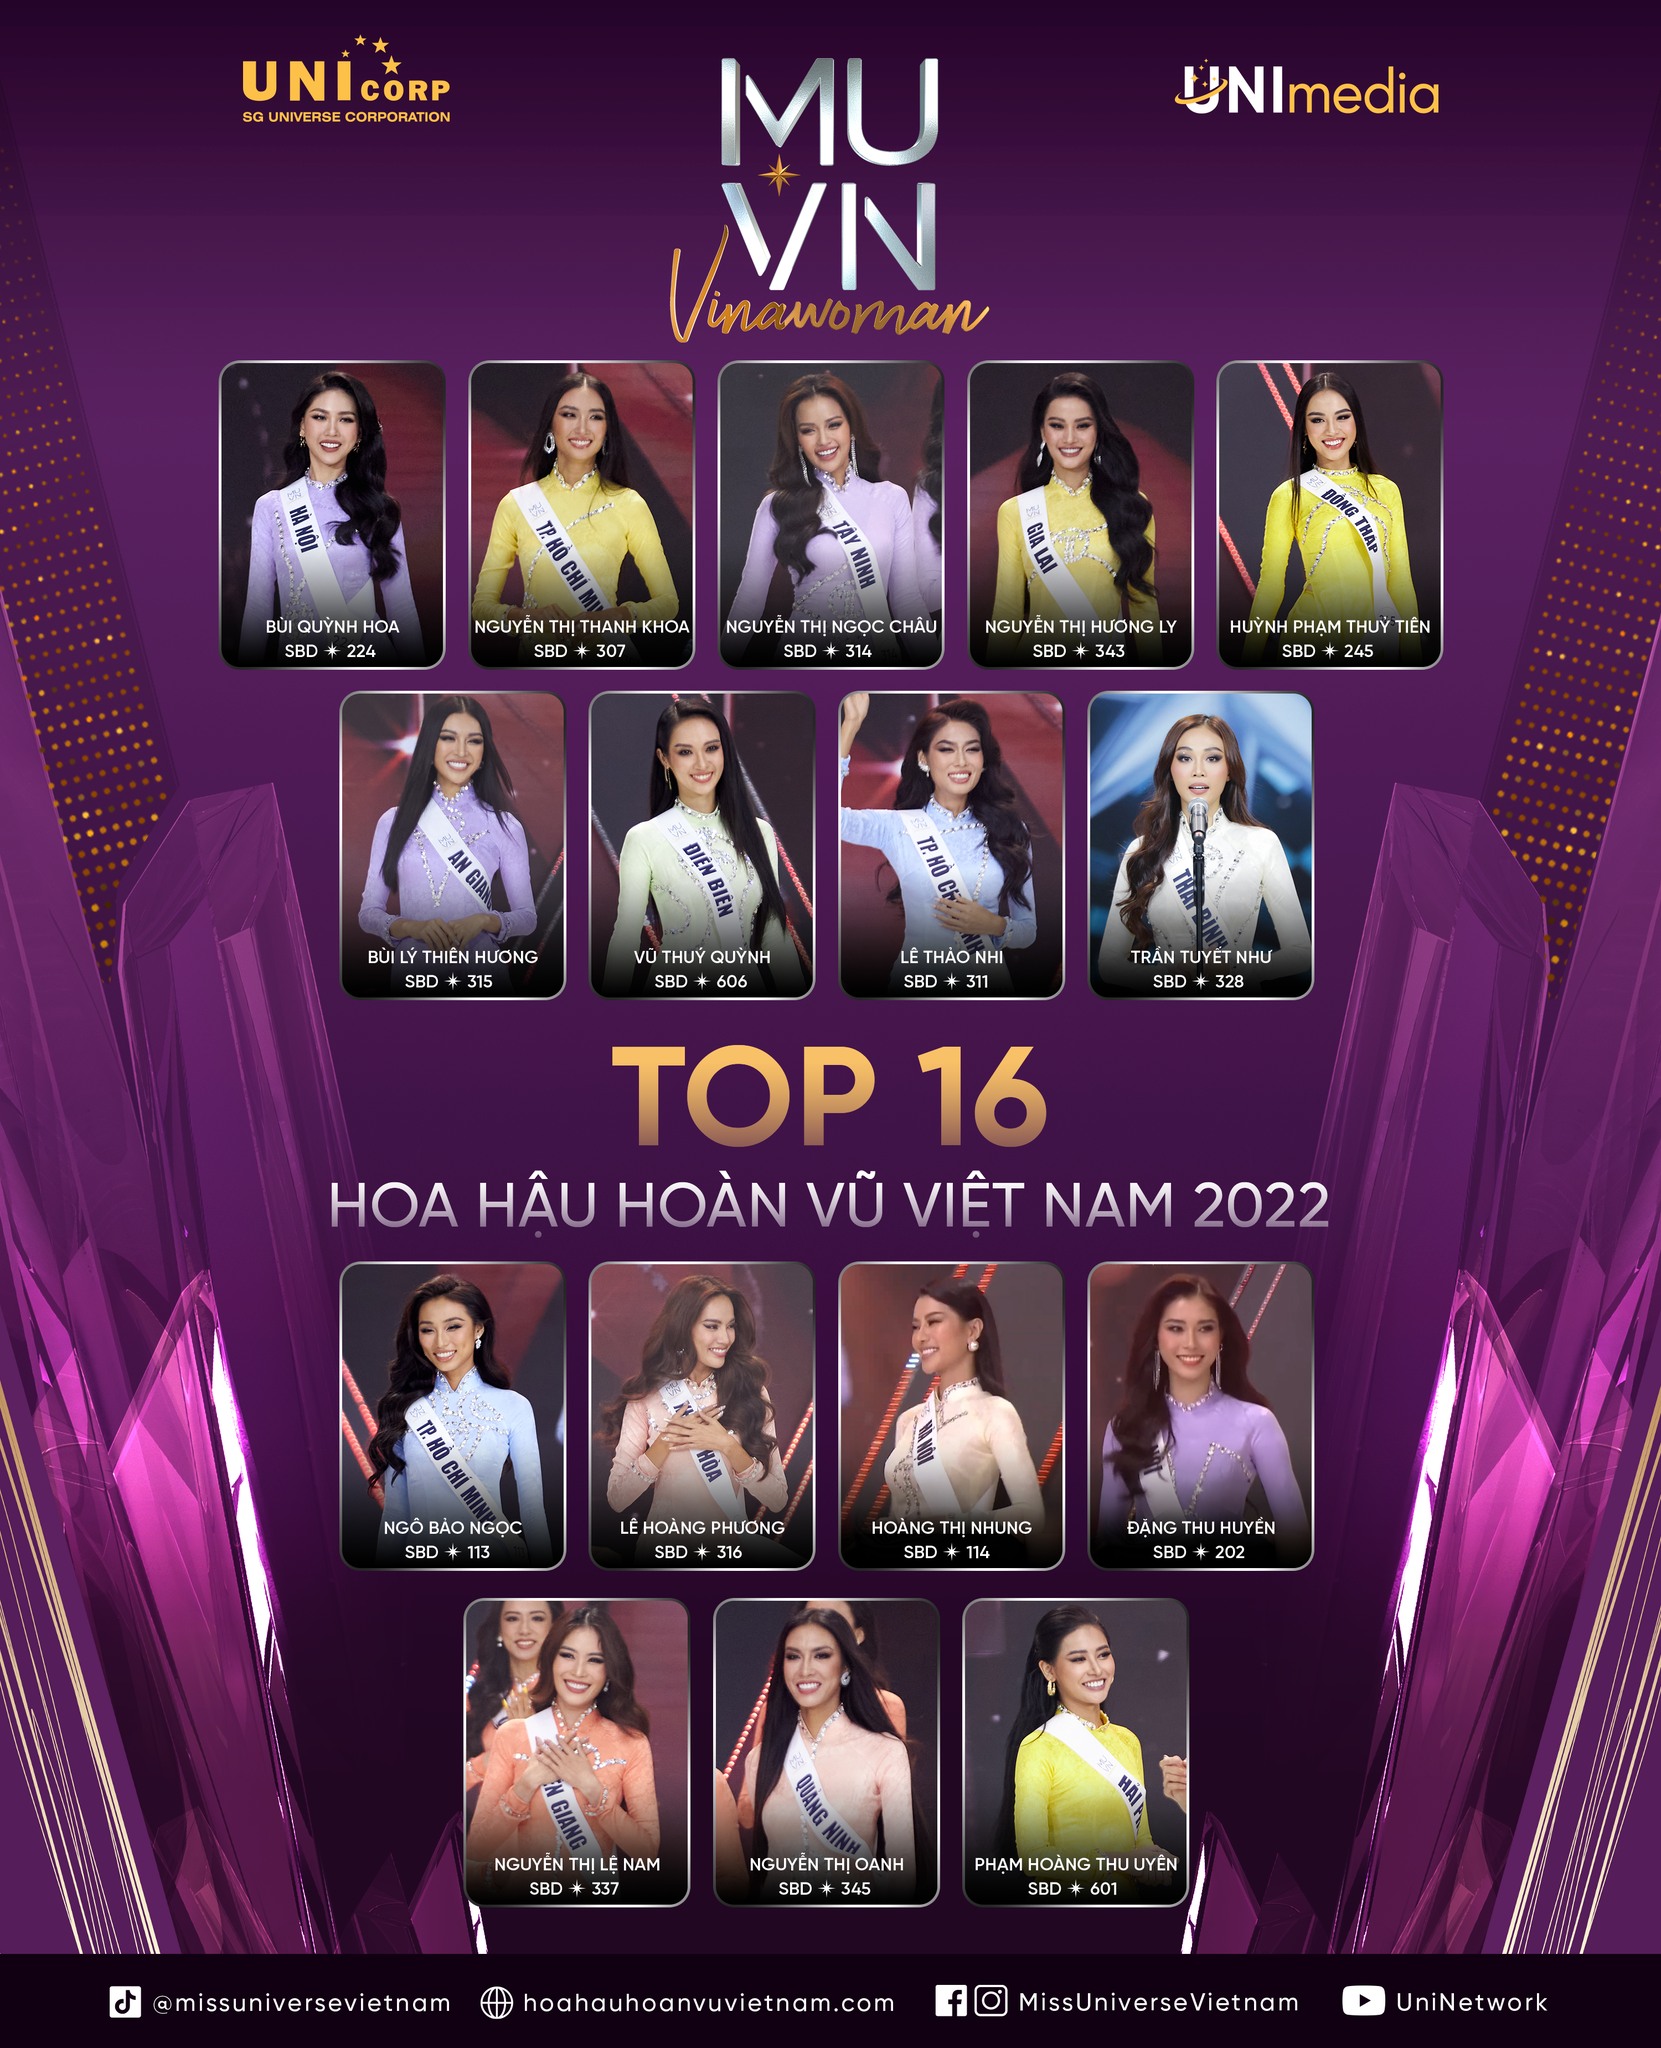 Điểm trừ trong đêm chung kết Hoa hậu Hoàn vũ Việt Nam 2022 - Ảnh 2.